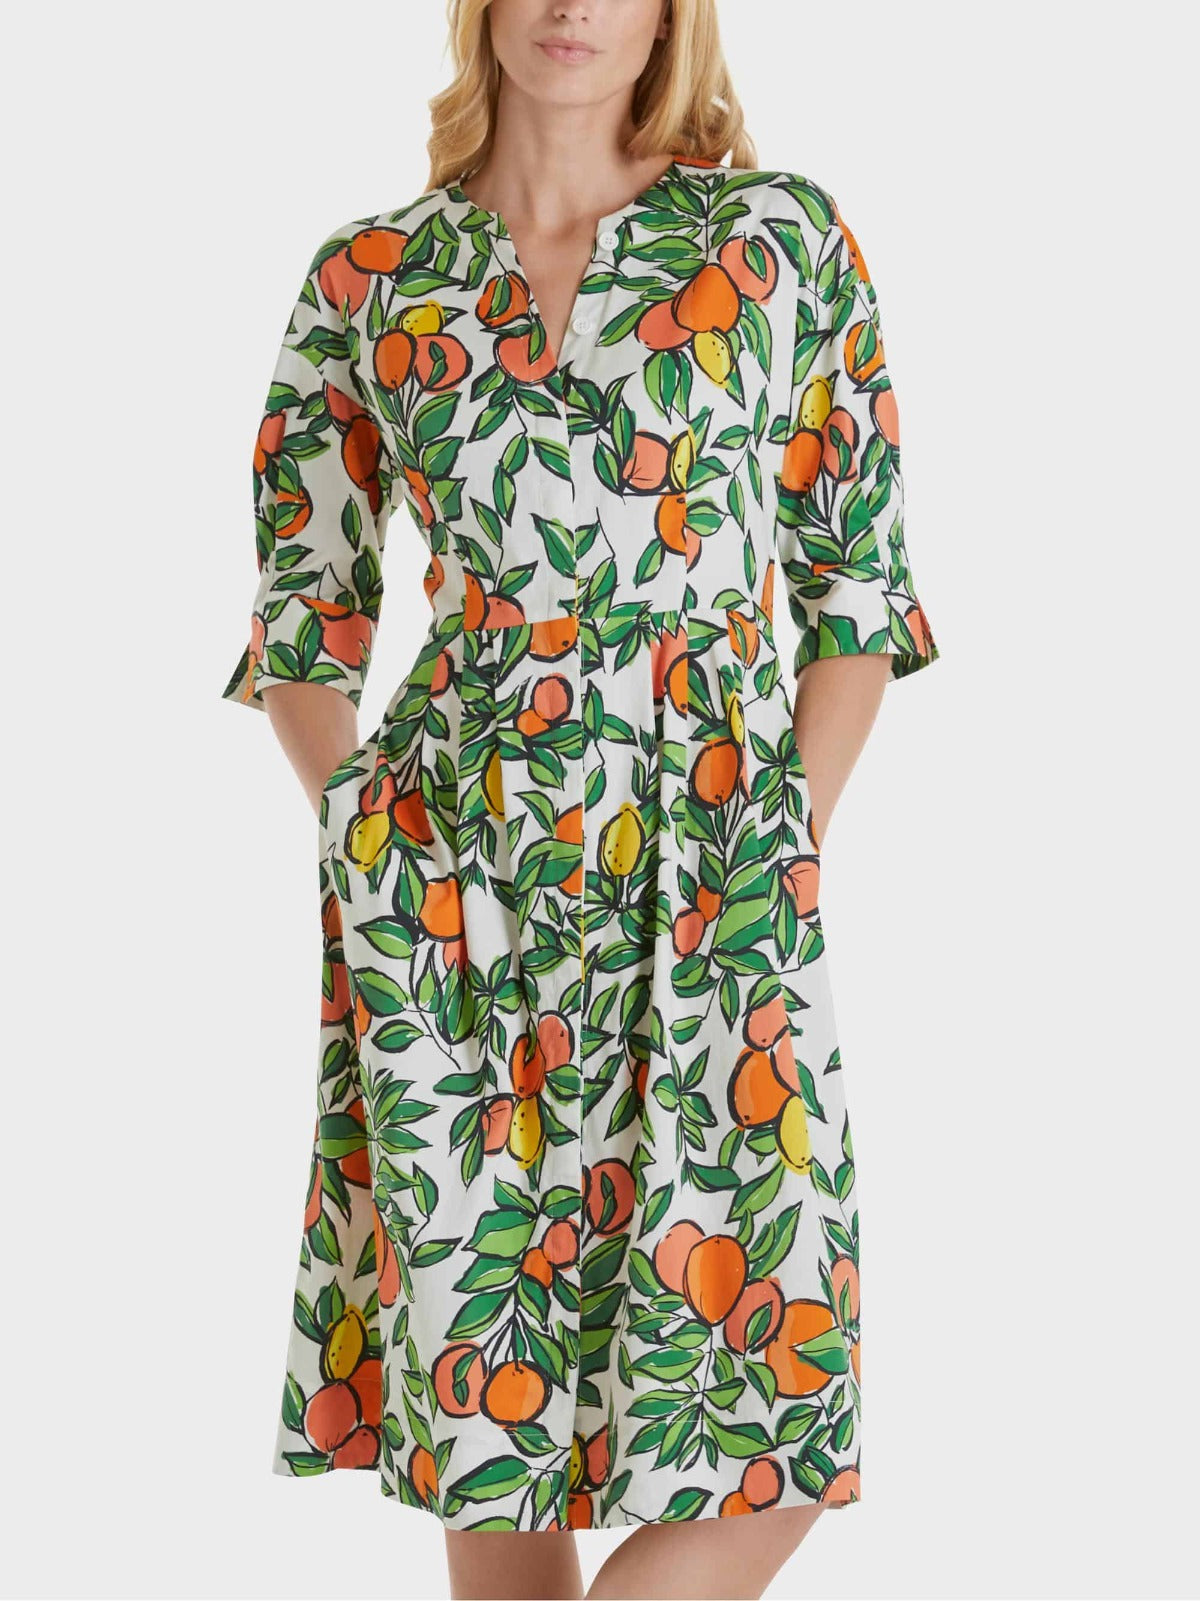 Citrus Fruit Cotton Print Dress